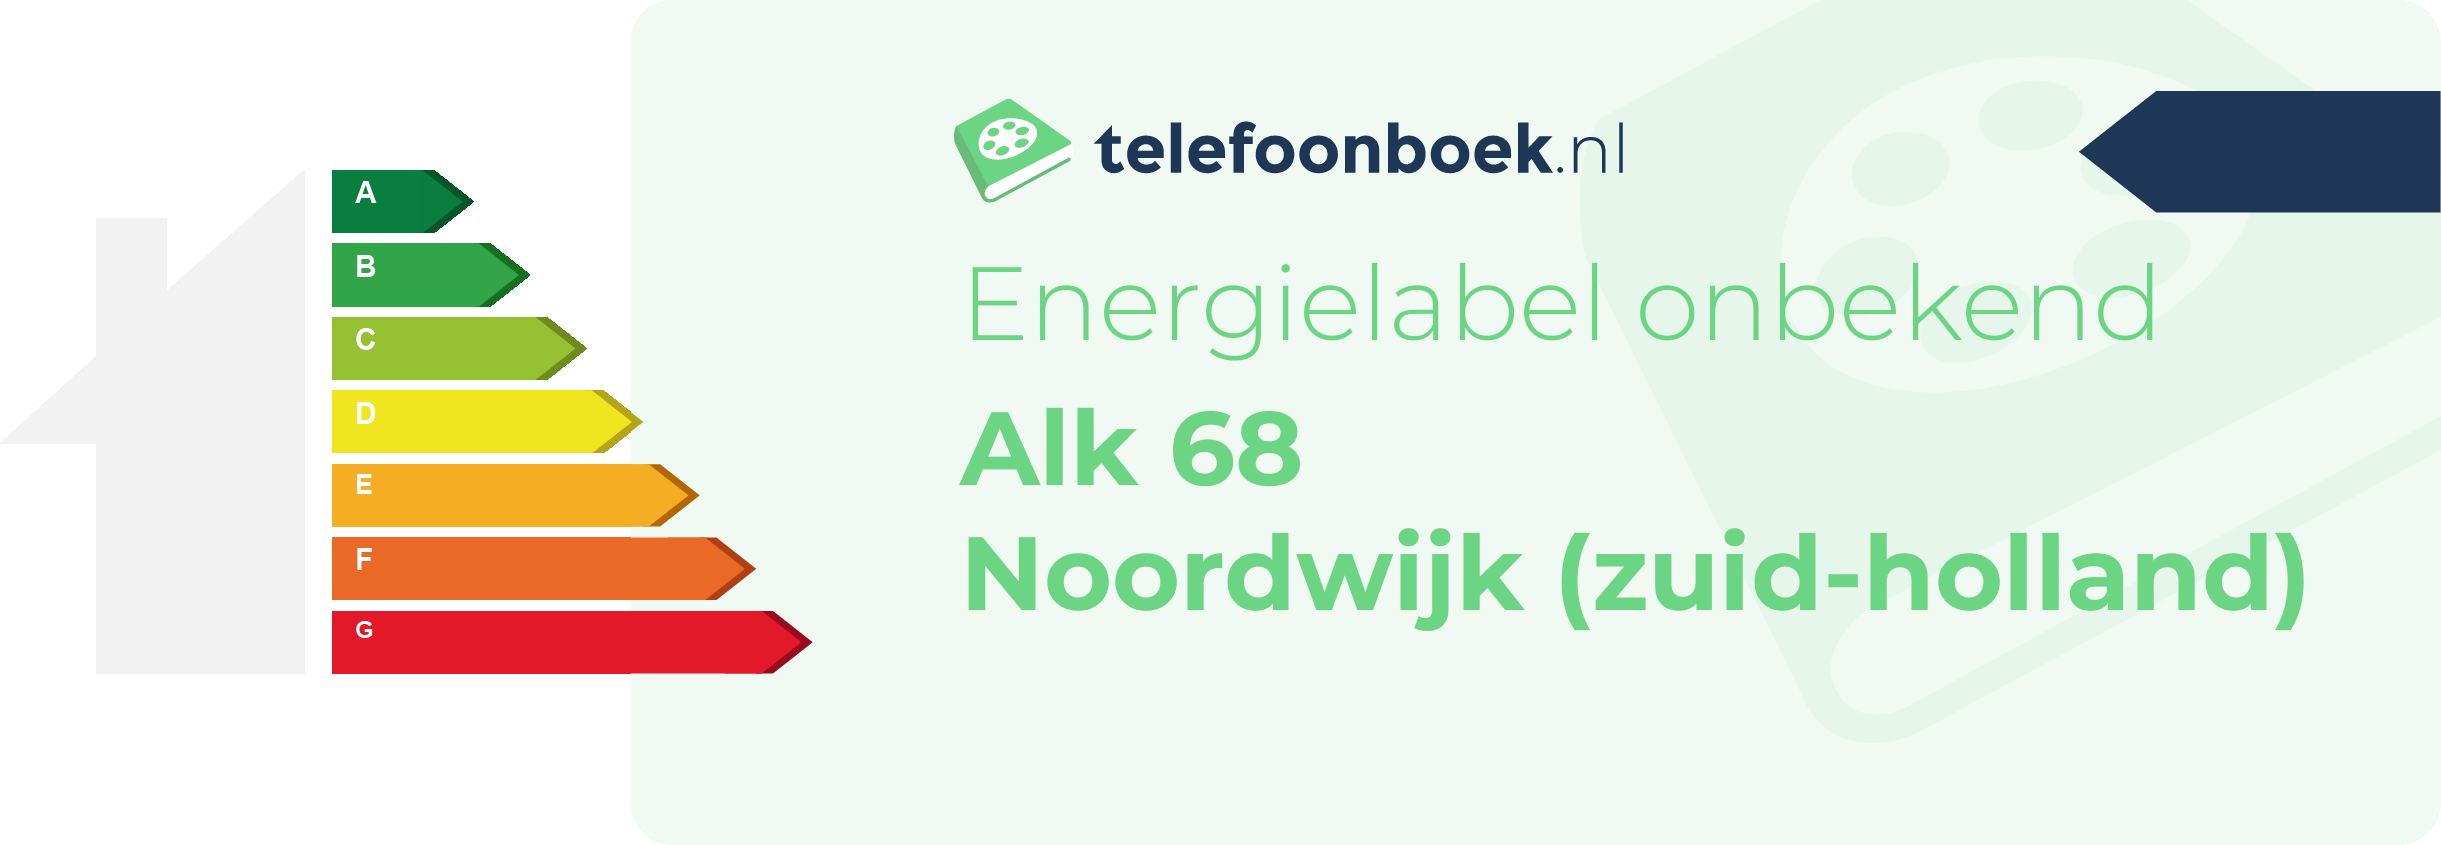 Energielabel Alk 68 Noordwijk (Zuid-Holland)